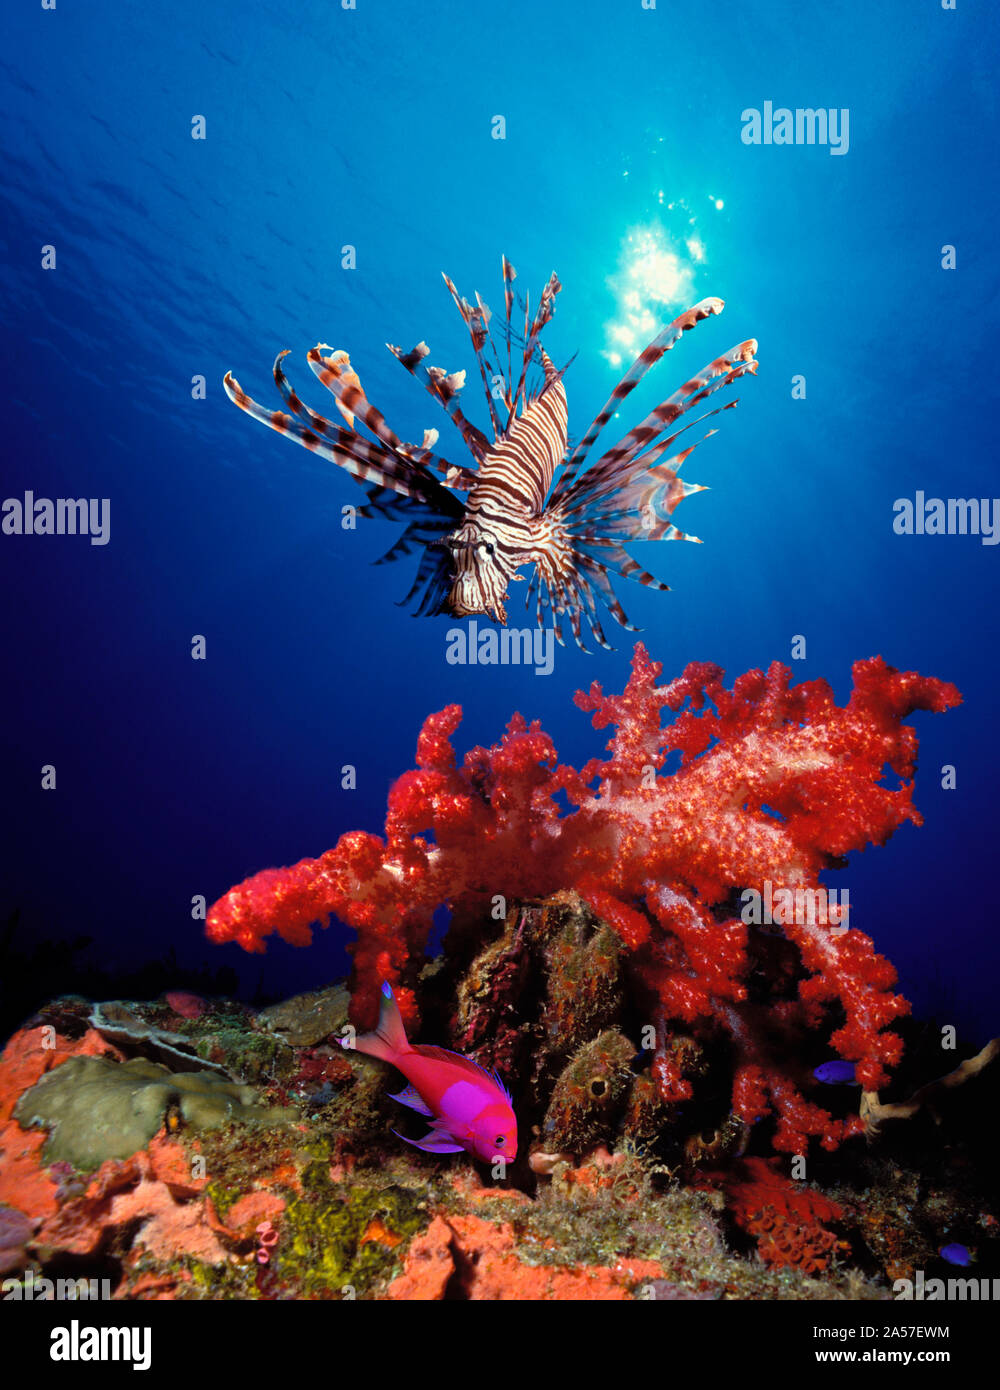 Lionfish (Pteropterus radiata) and Squarespot anthias (Pseudanthias pleurotaenia) with soft corals in the ocean Stock Photo